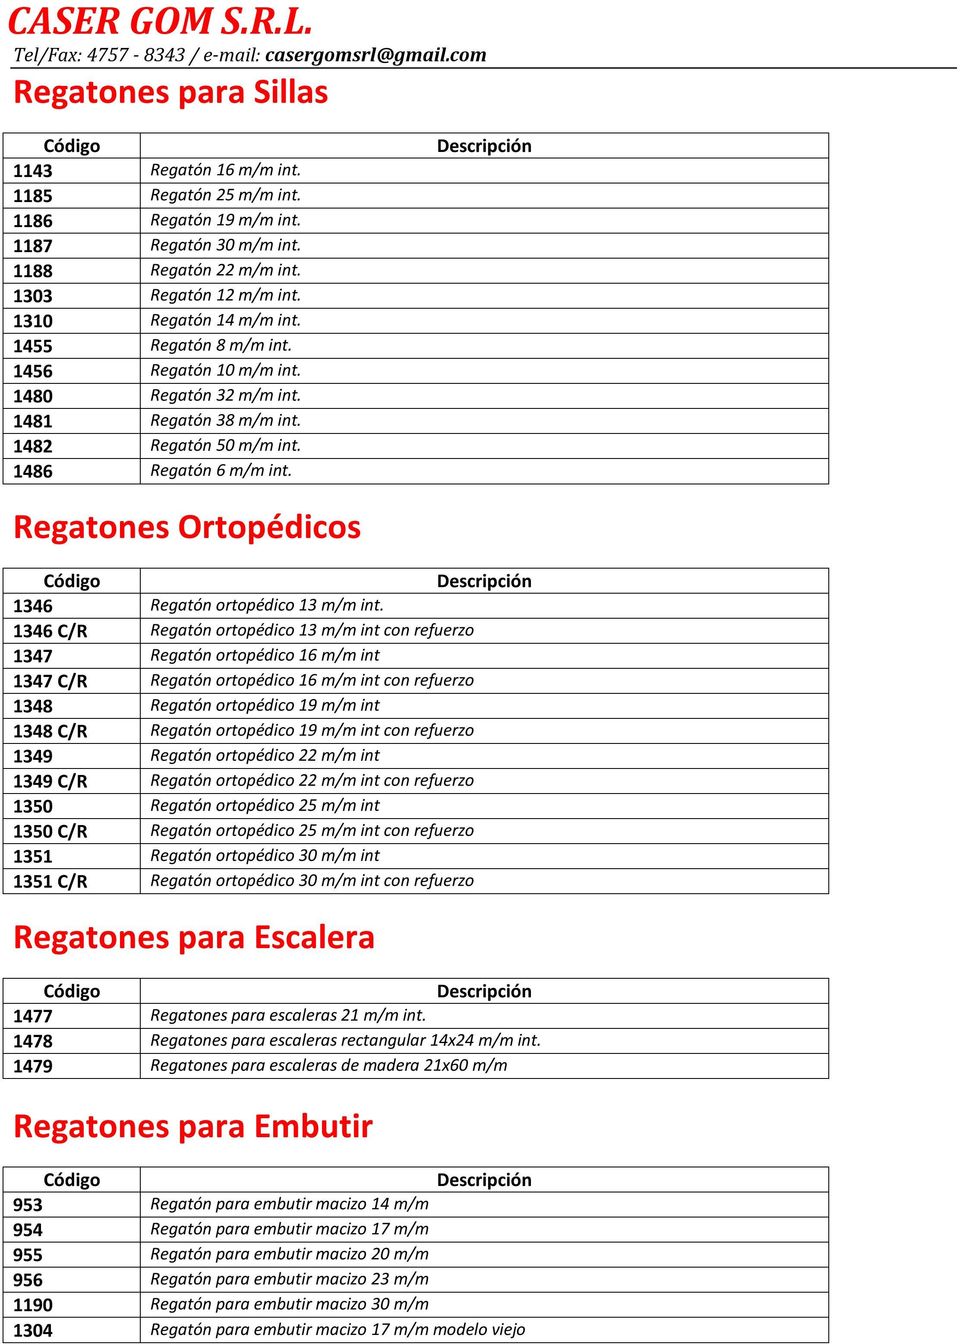 Regatones Ortopédicos 1346 Regatón ortopédico 13 m/m int.